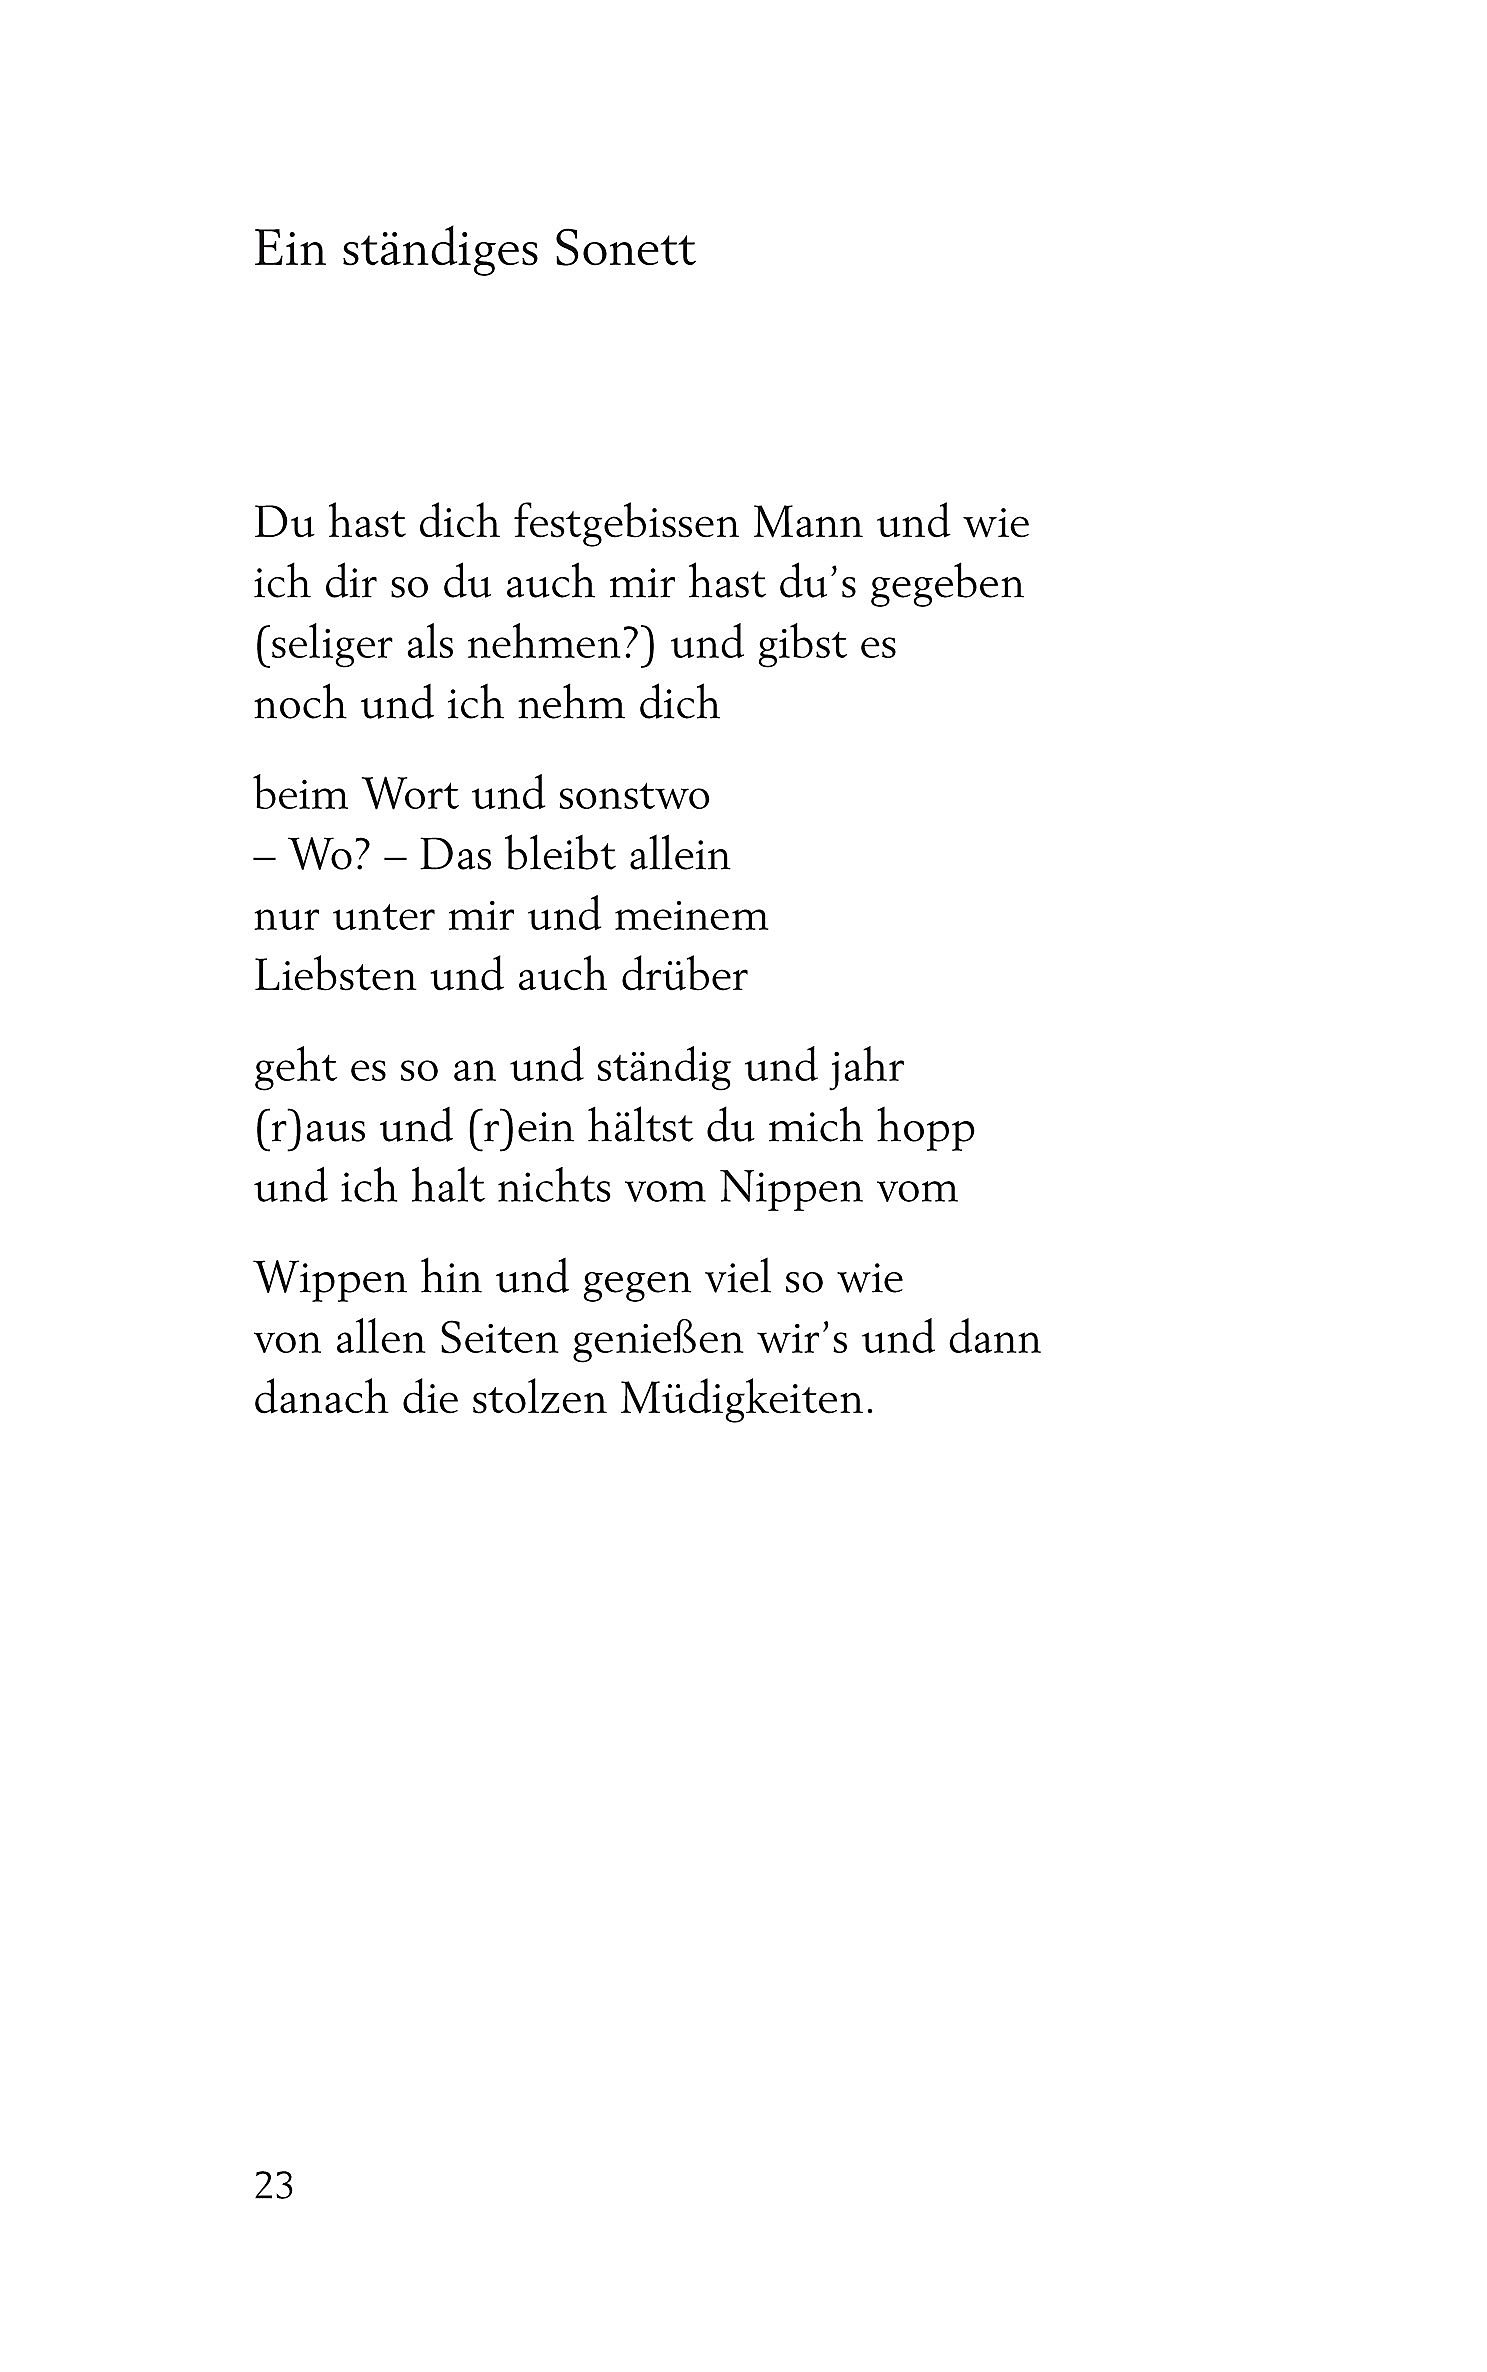 Ulla hahn bekanntschaft gedicht